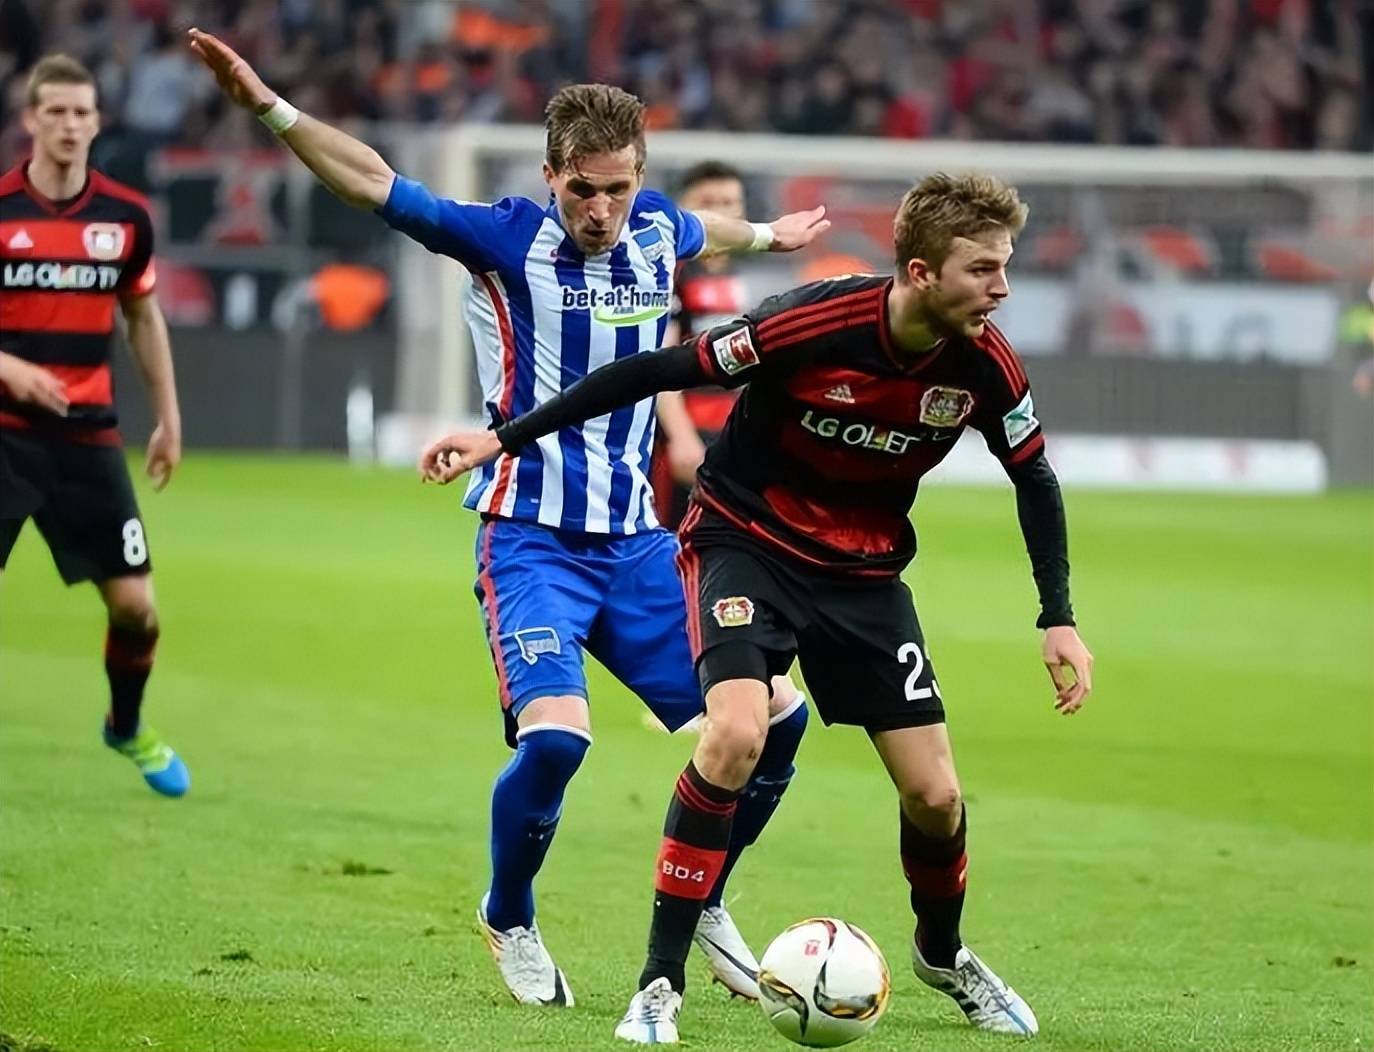 168娱乐-德国甲级联赛赛事预告-美因茨对阵拜仁慕尼黑-沃尔夫斯堡对阵勒沃库森